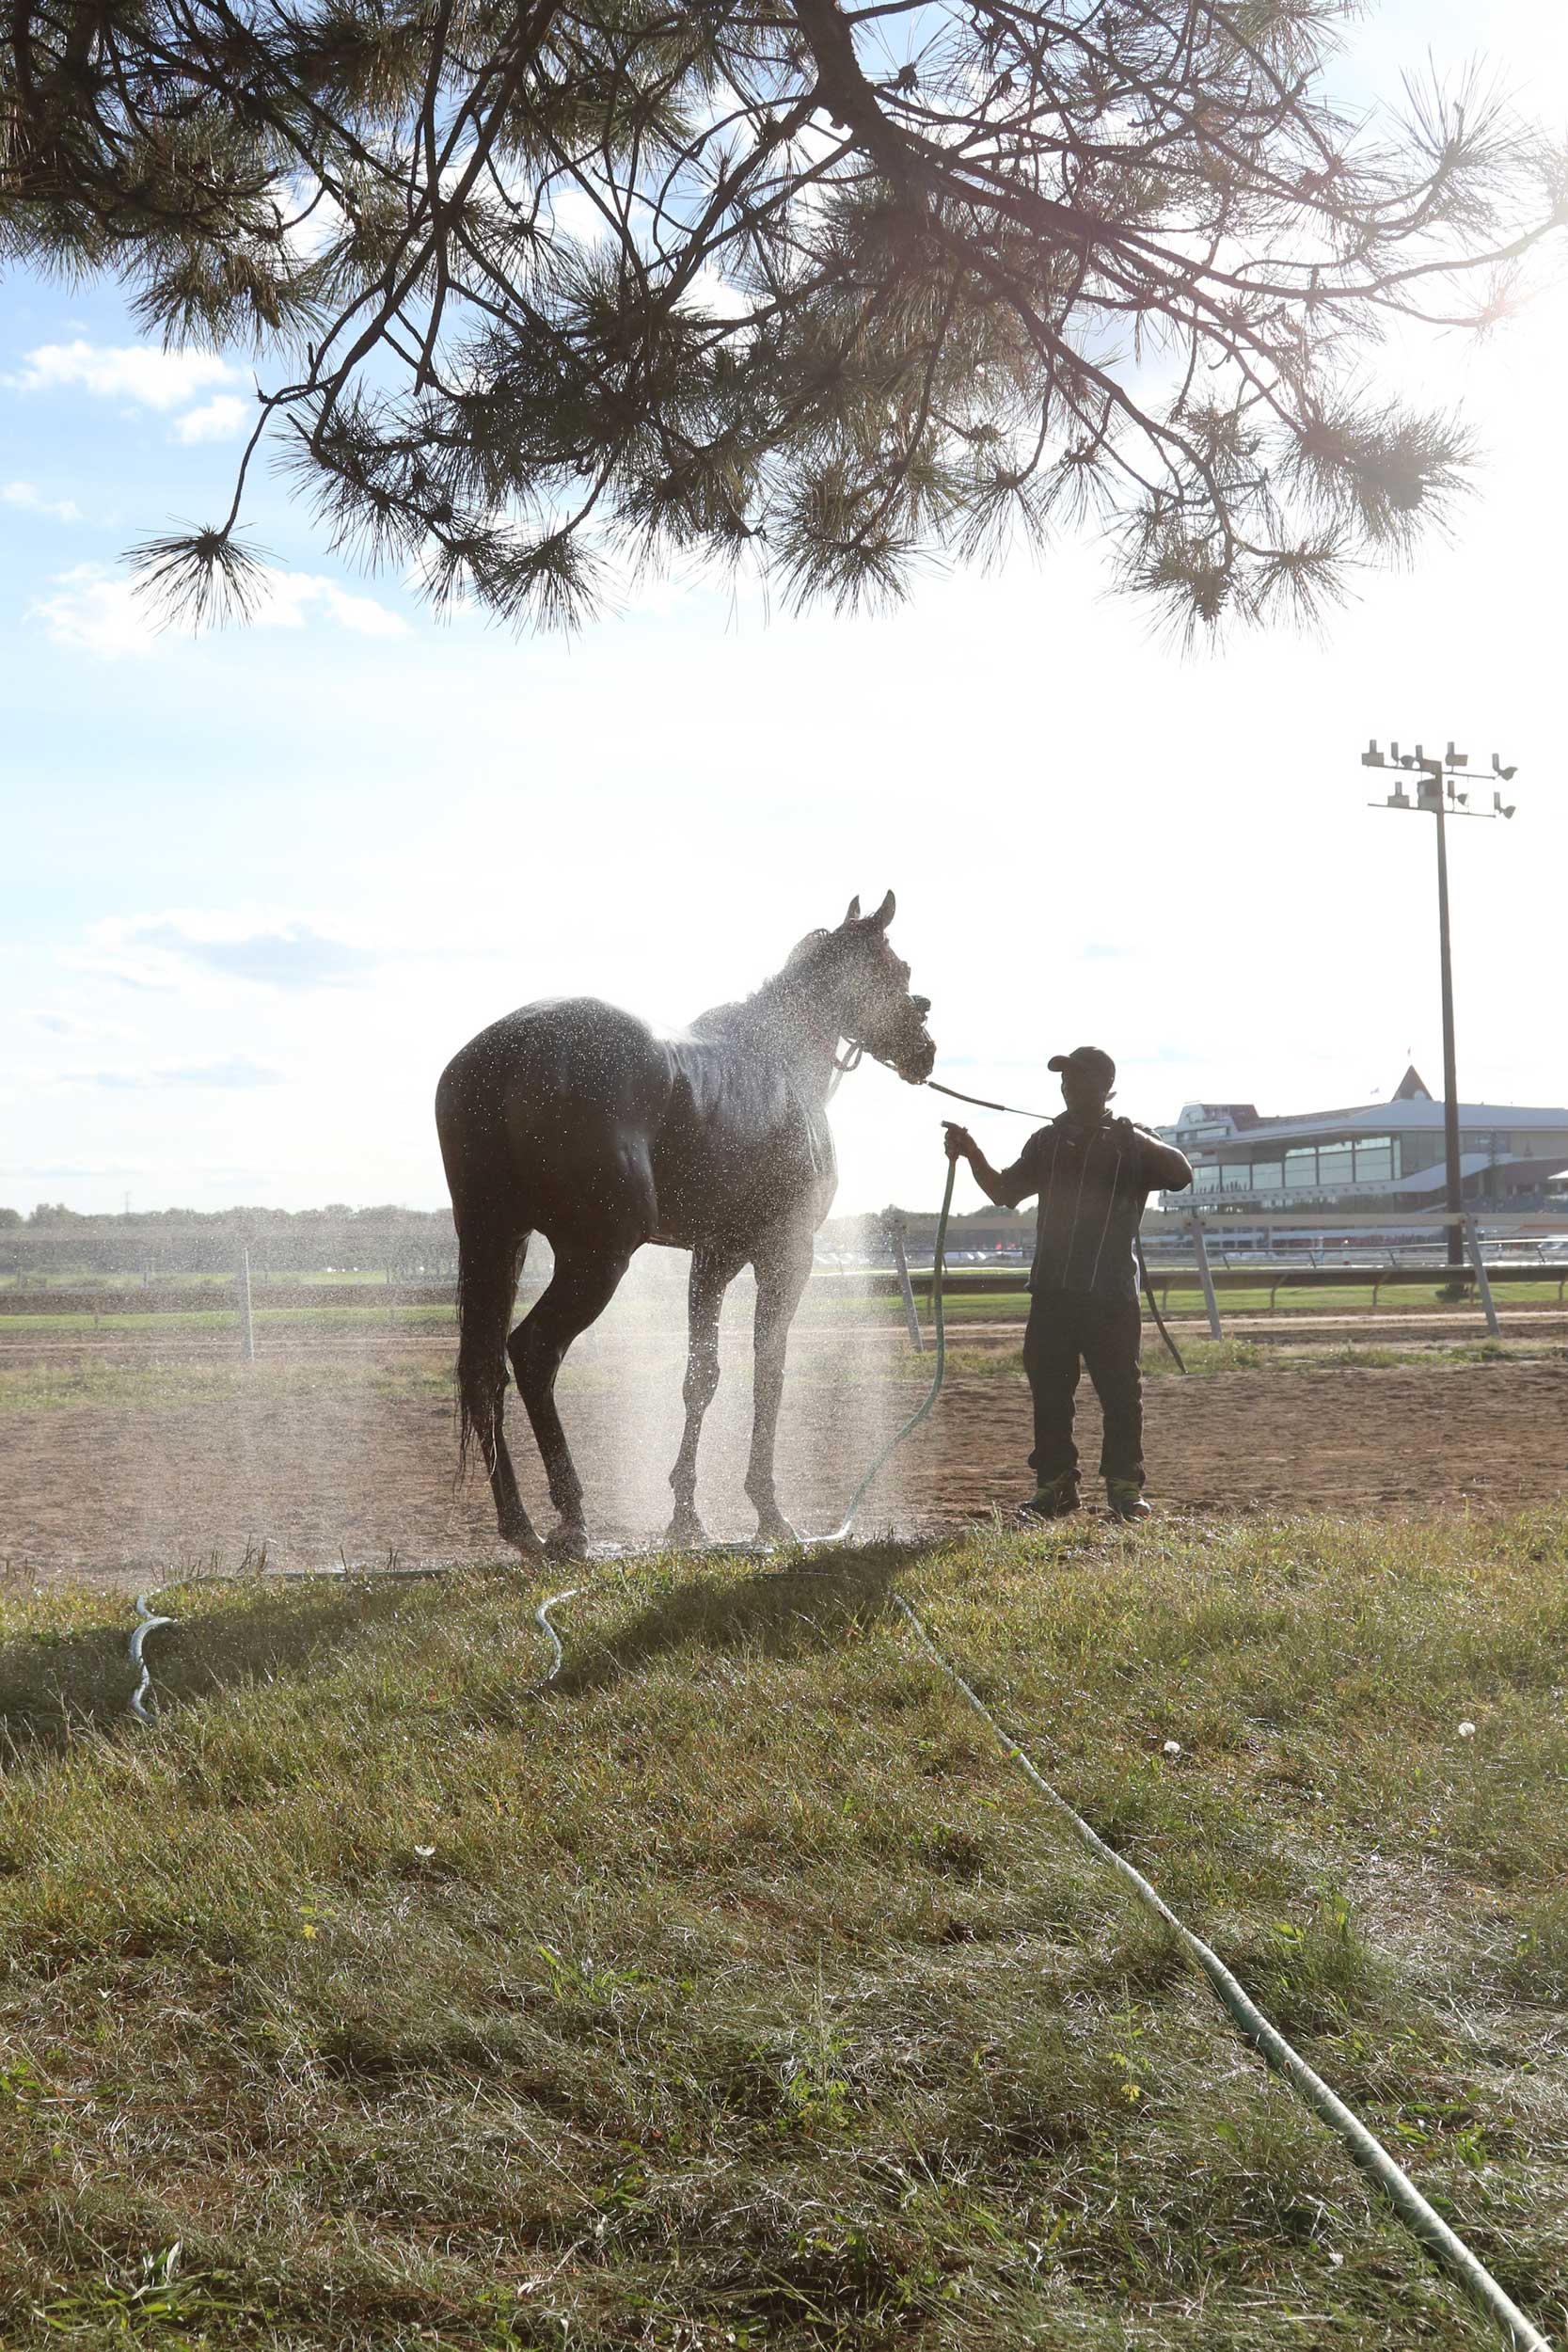 Washing horse at horse racing track